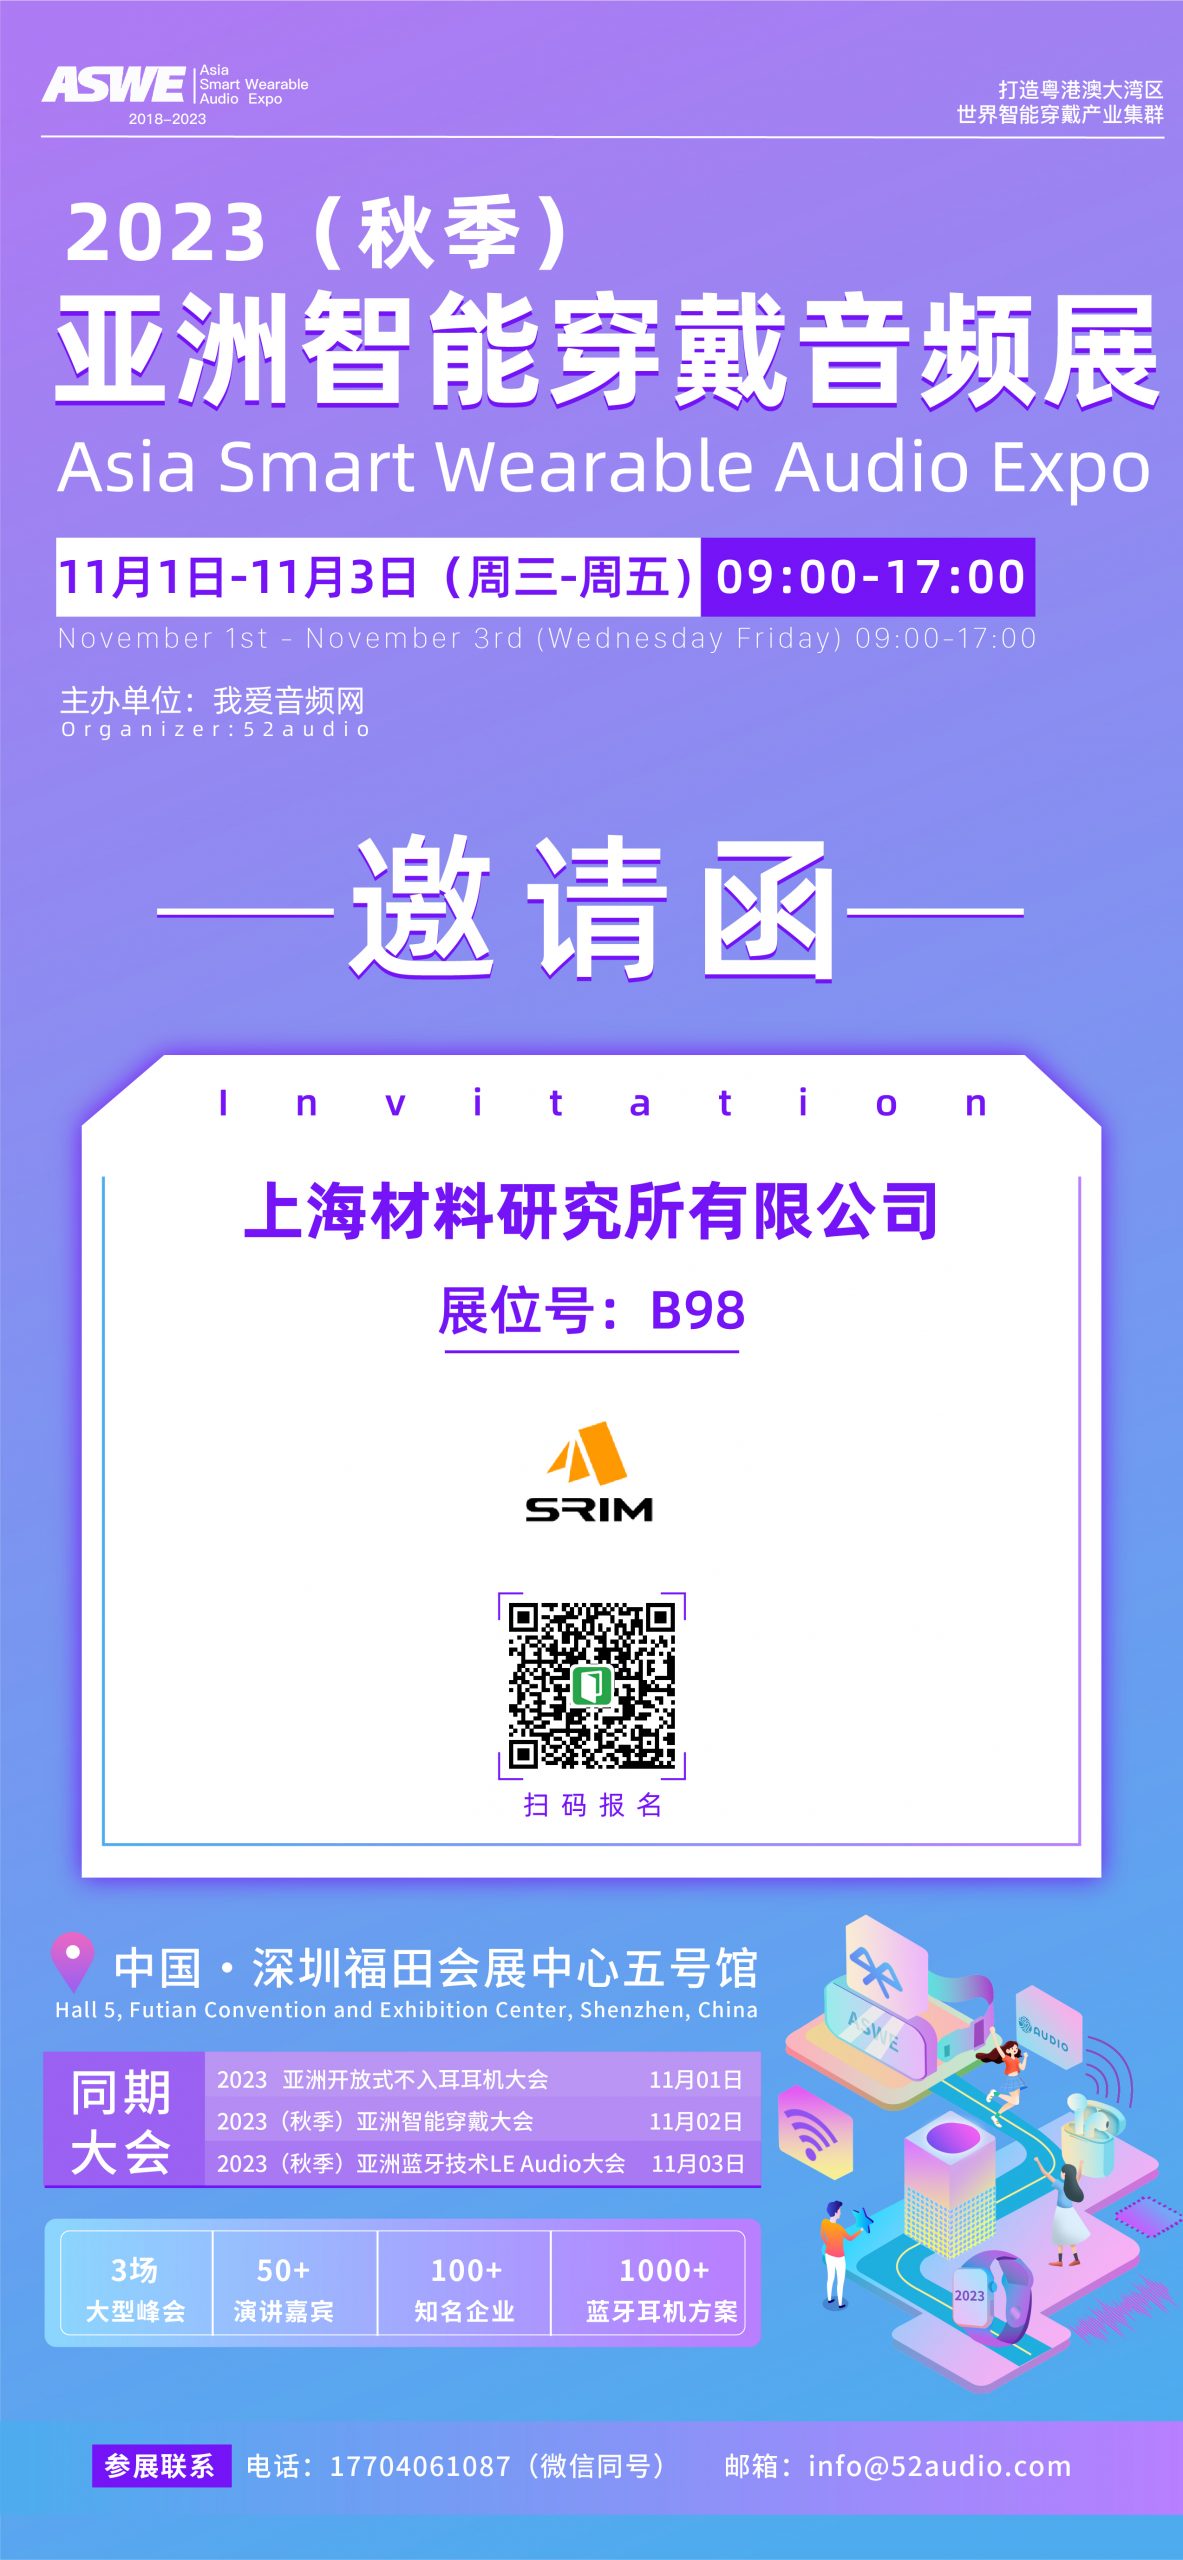 上海材料研究所参加2023（秋季）亚洲智能穿戴音频展，展位号B98-我爱音频网